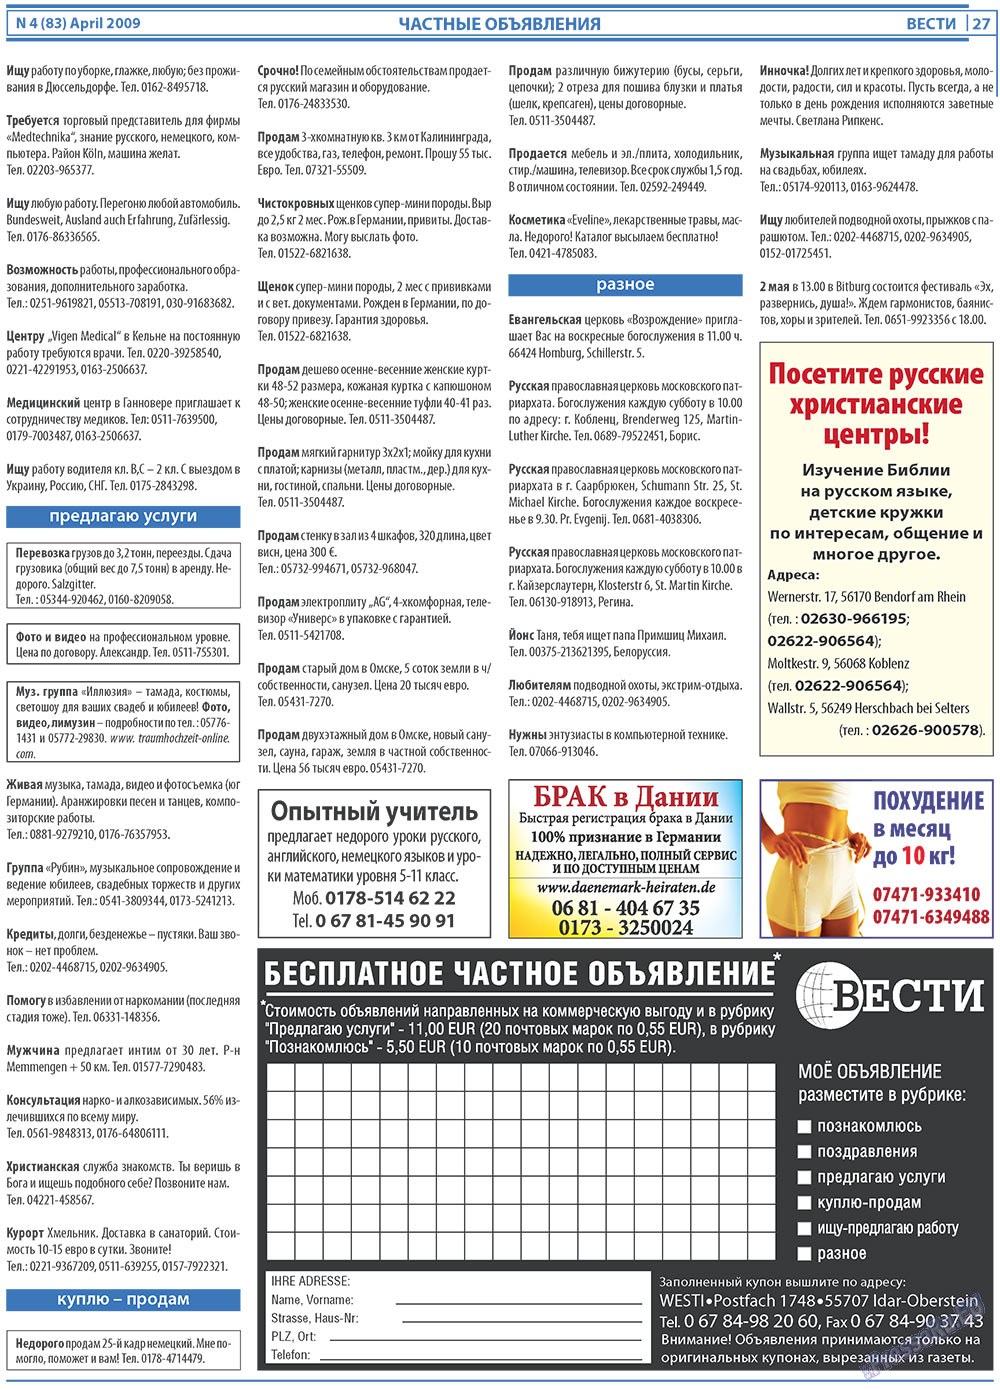 Вести, газета. 2009 №4 стр.27